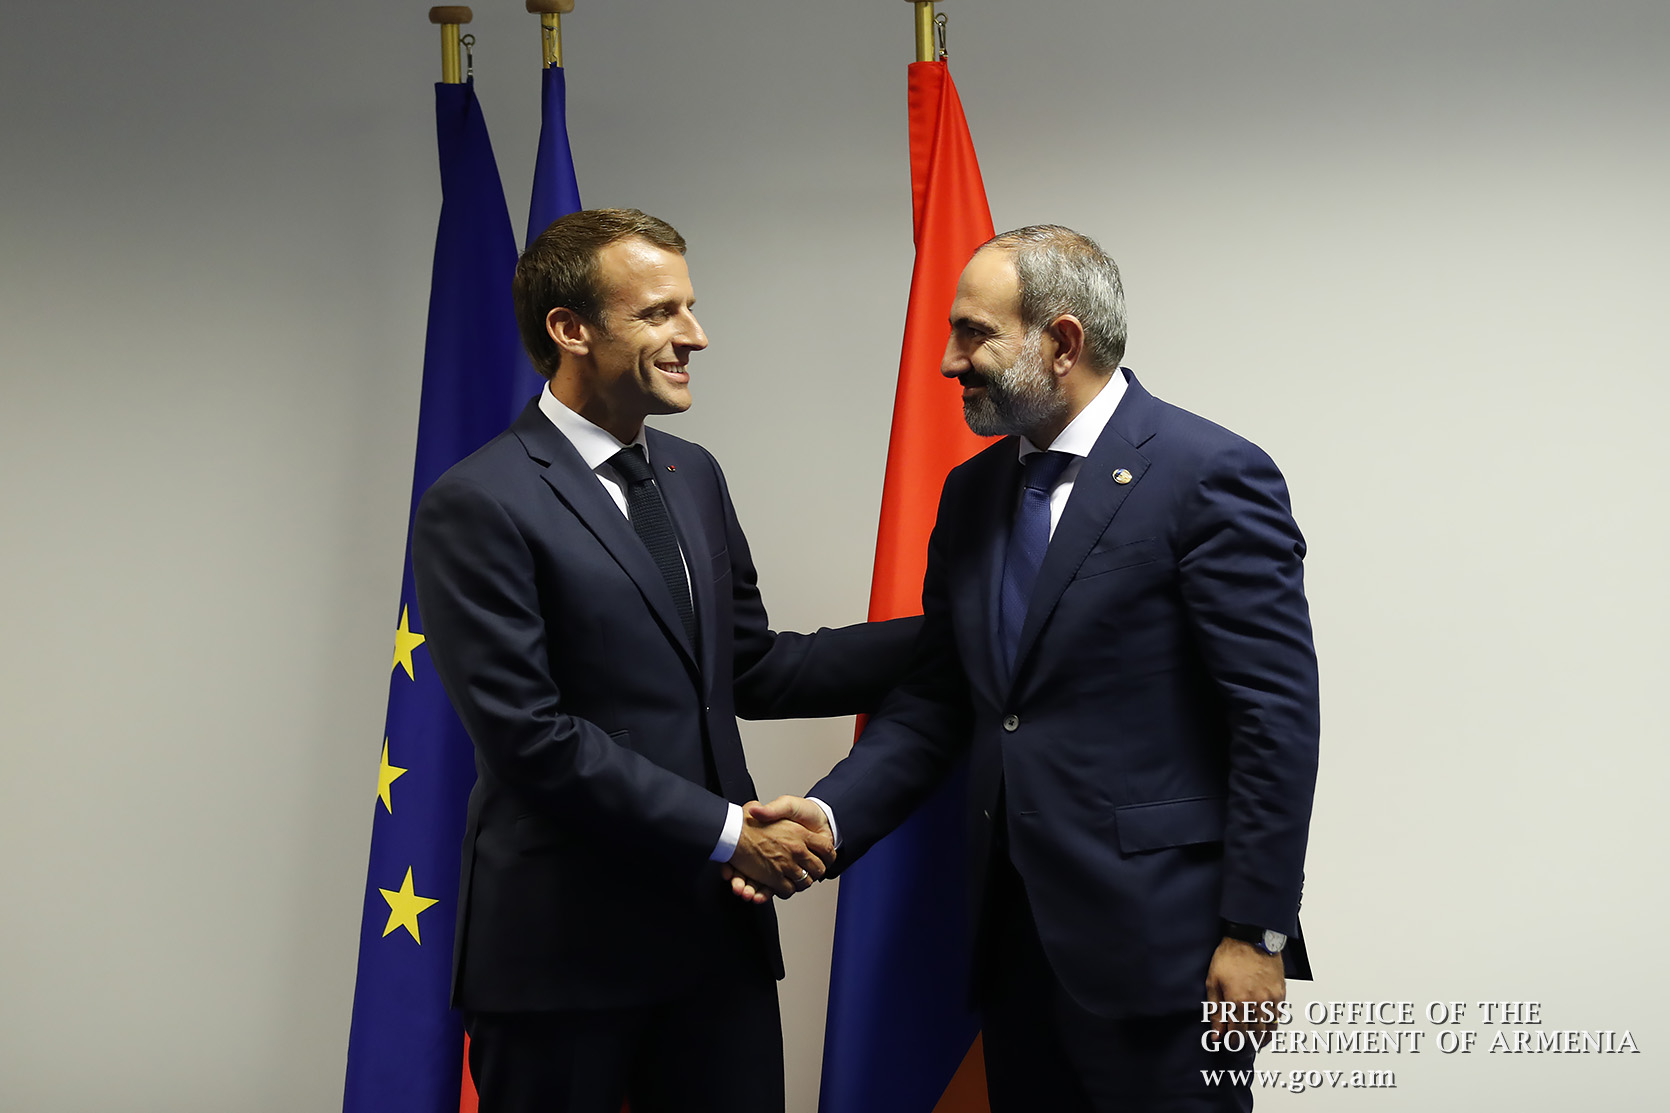 Франция готова продолжать усилия для расширения тесного сотрудничества с Арменией - Макрон